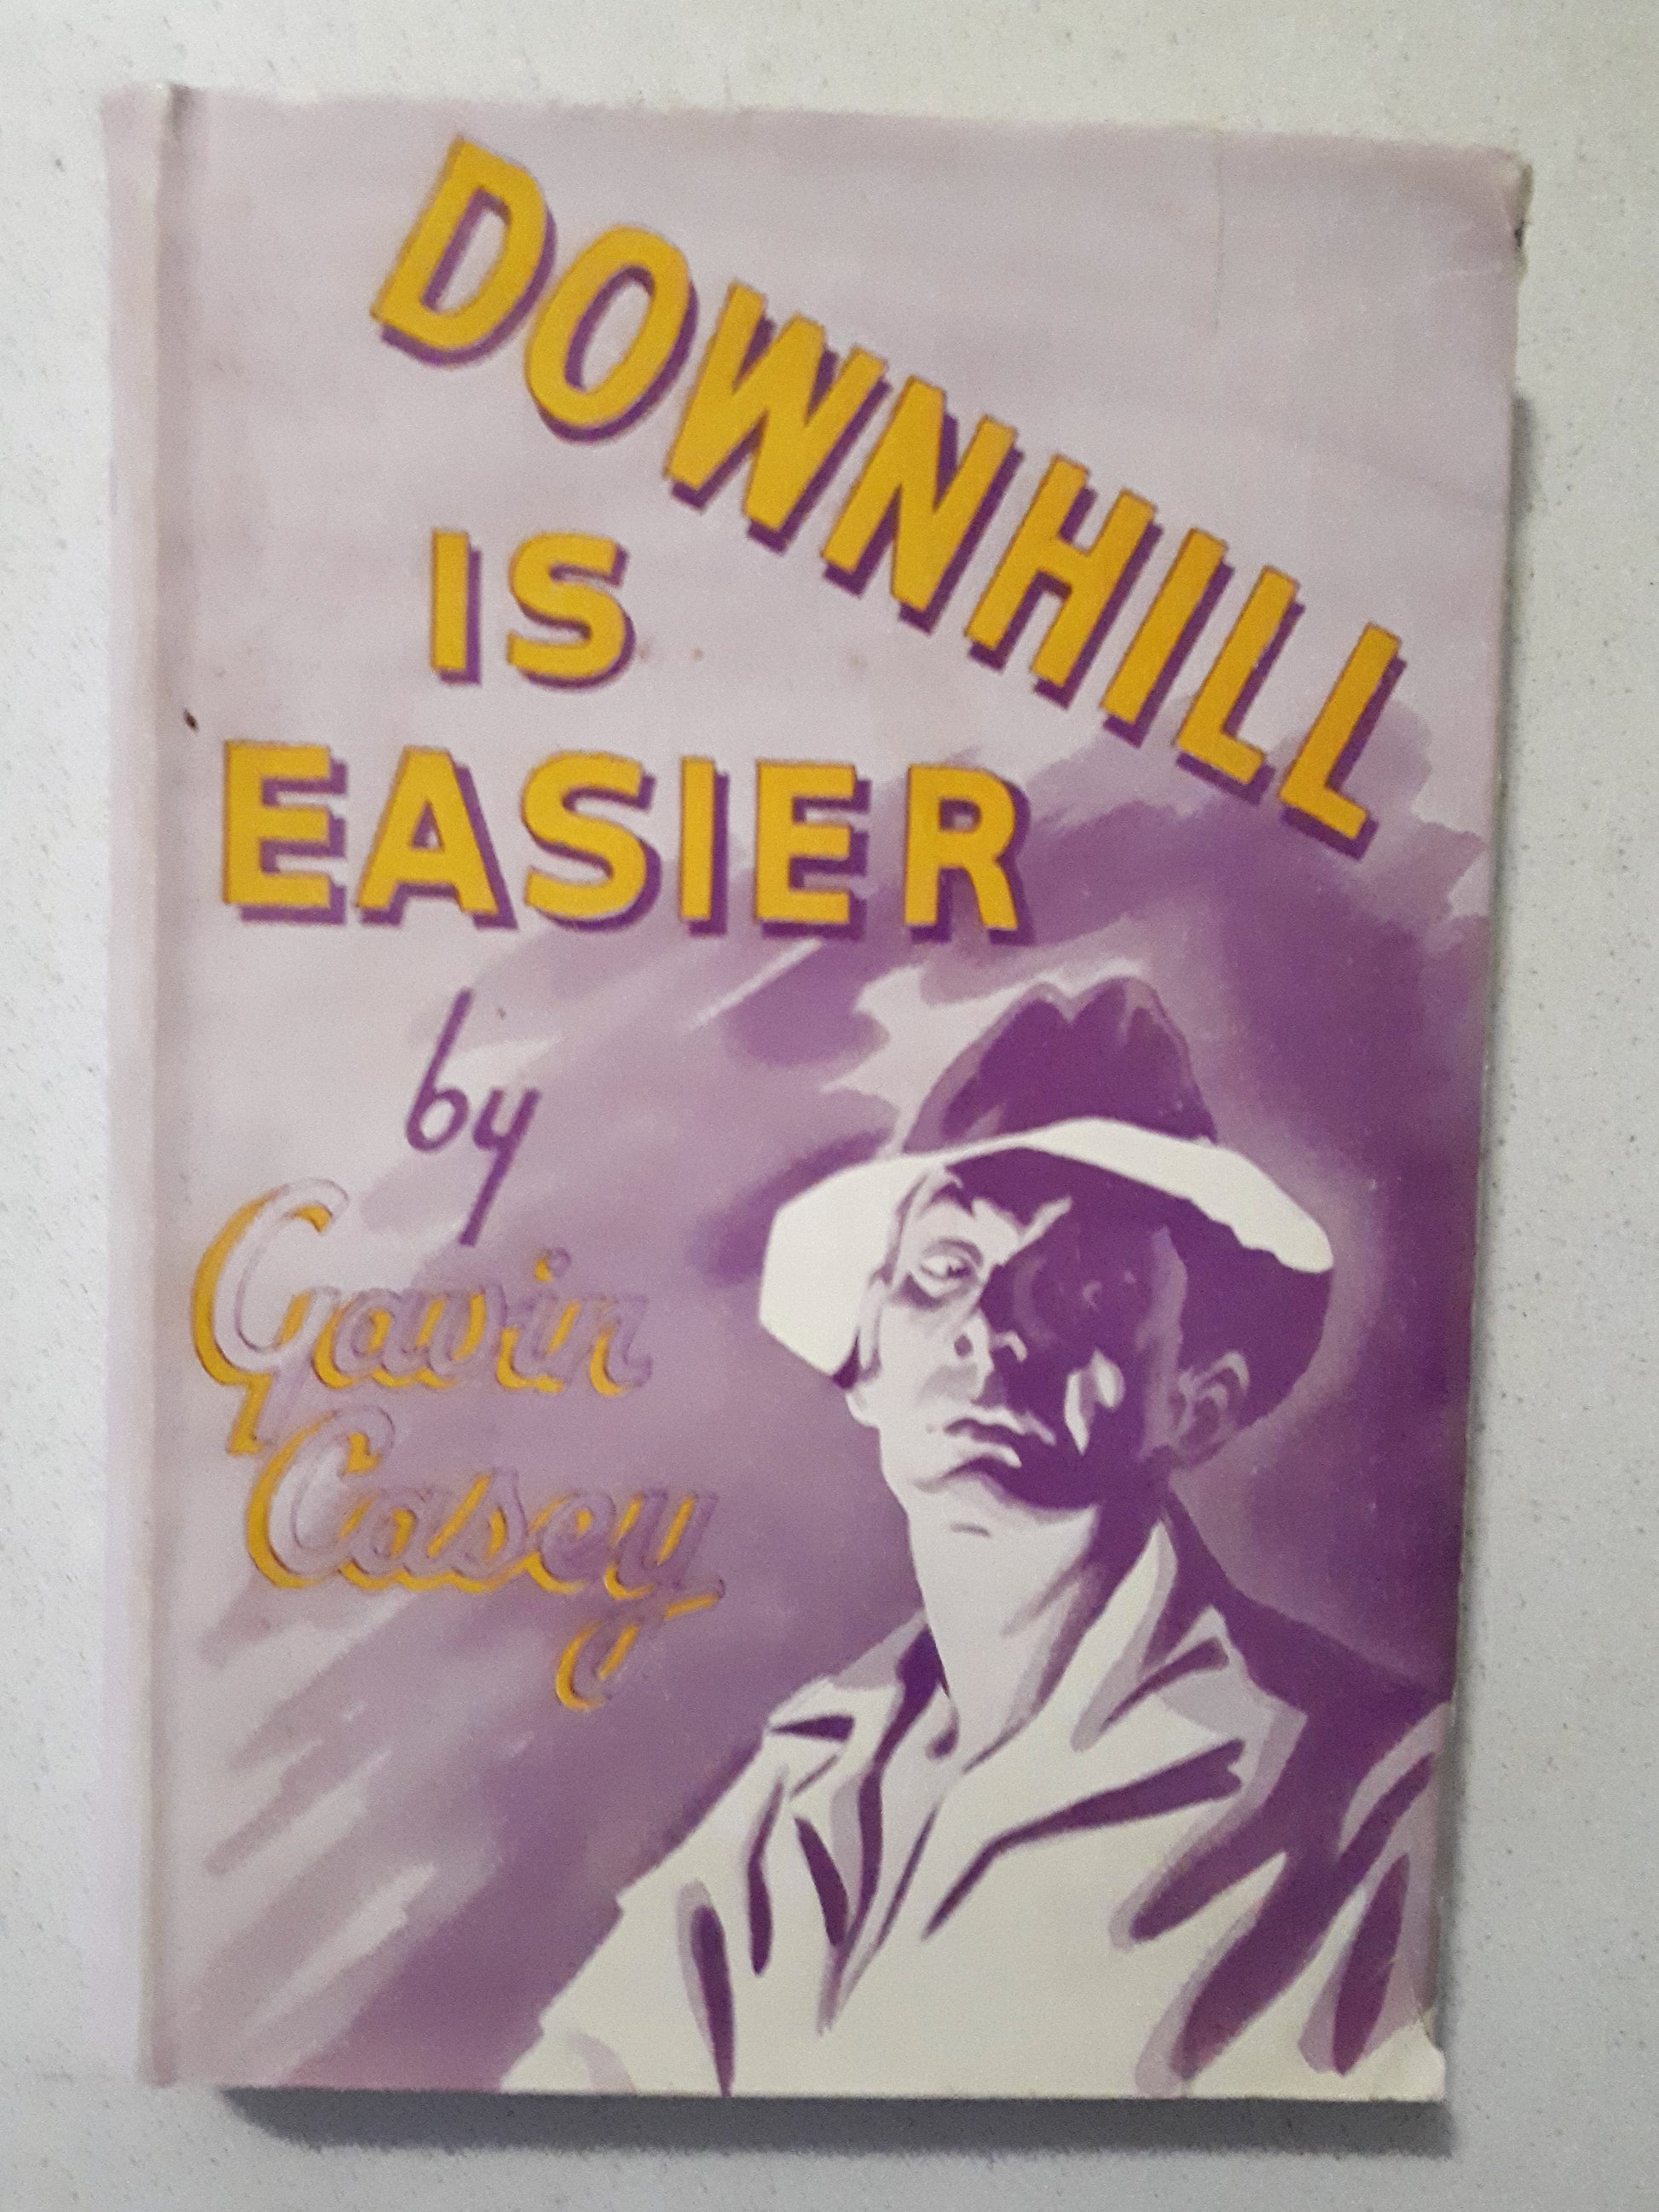 Downhill Is Easier by Gavin Casey